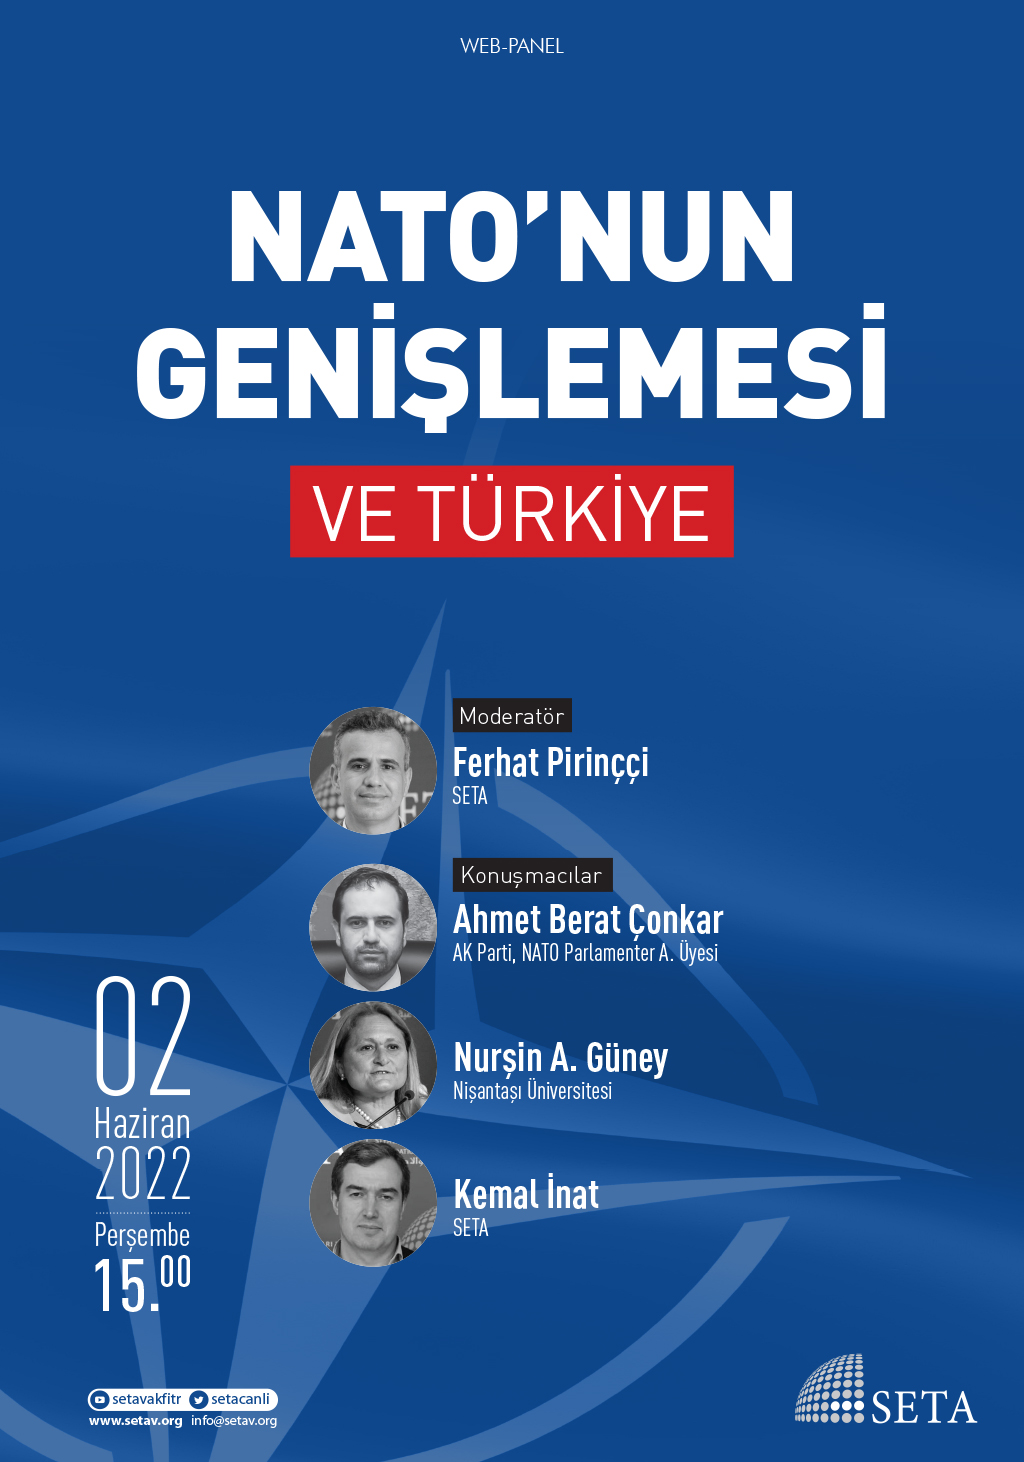 Web Panel: NATO’nun Genişlemesi ve Türkiye